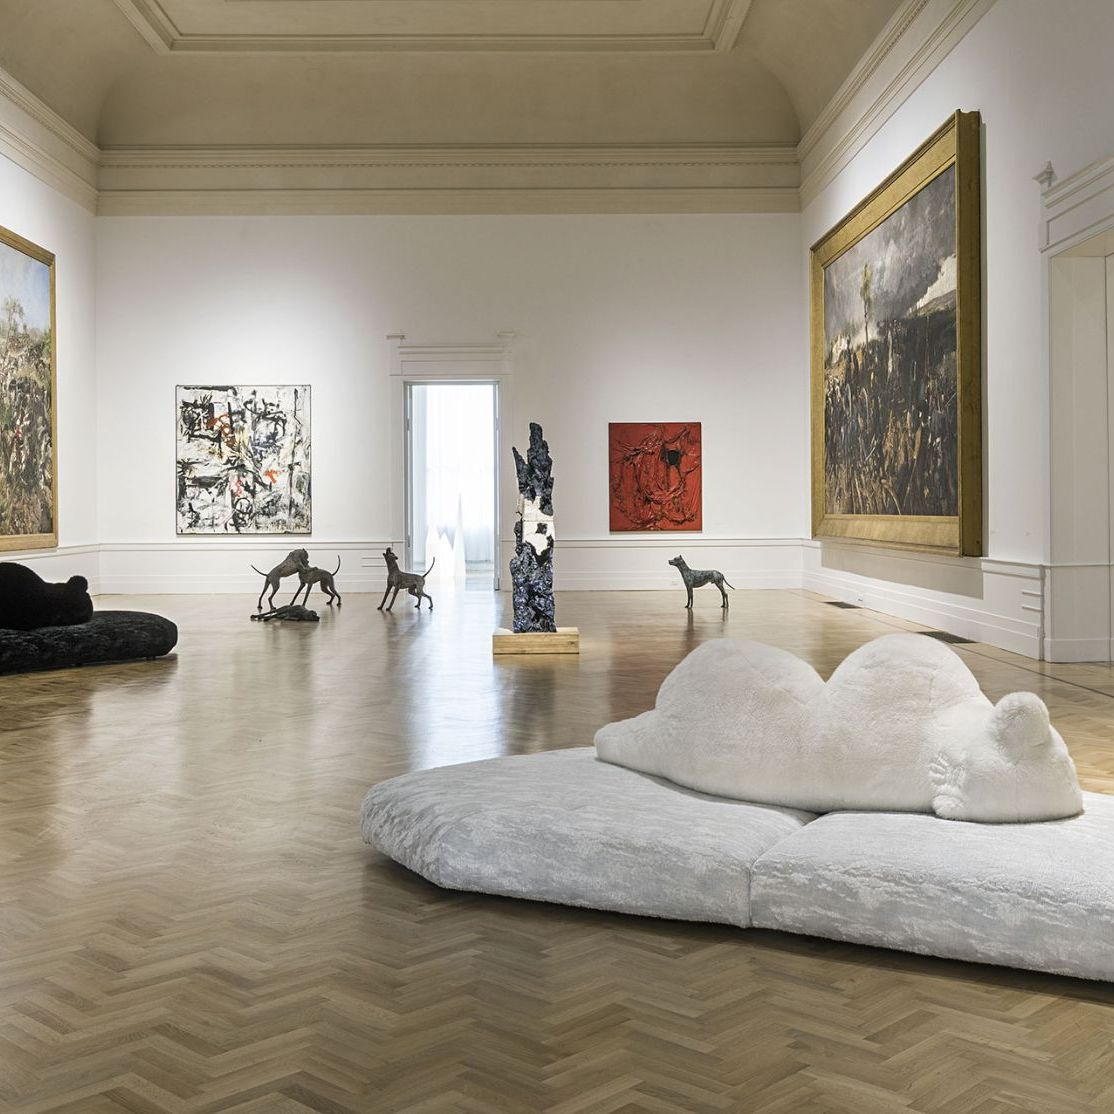   Pack . Die Sofas von Francesco Binfaré in den Versionen weiß und schwarz in dem Saal, der dem Krieg gewidmet ist. 